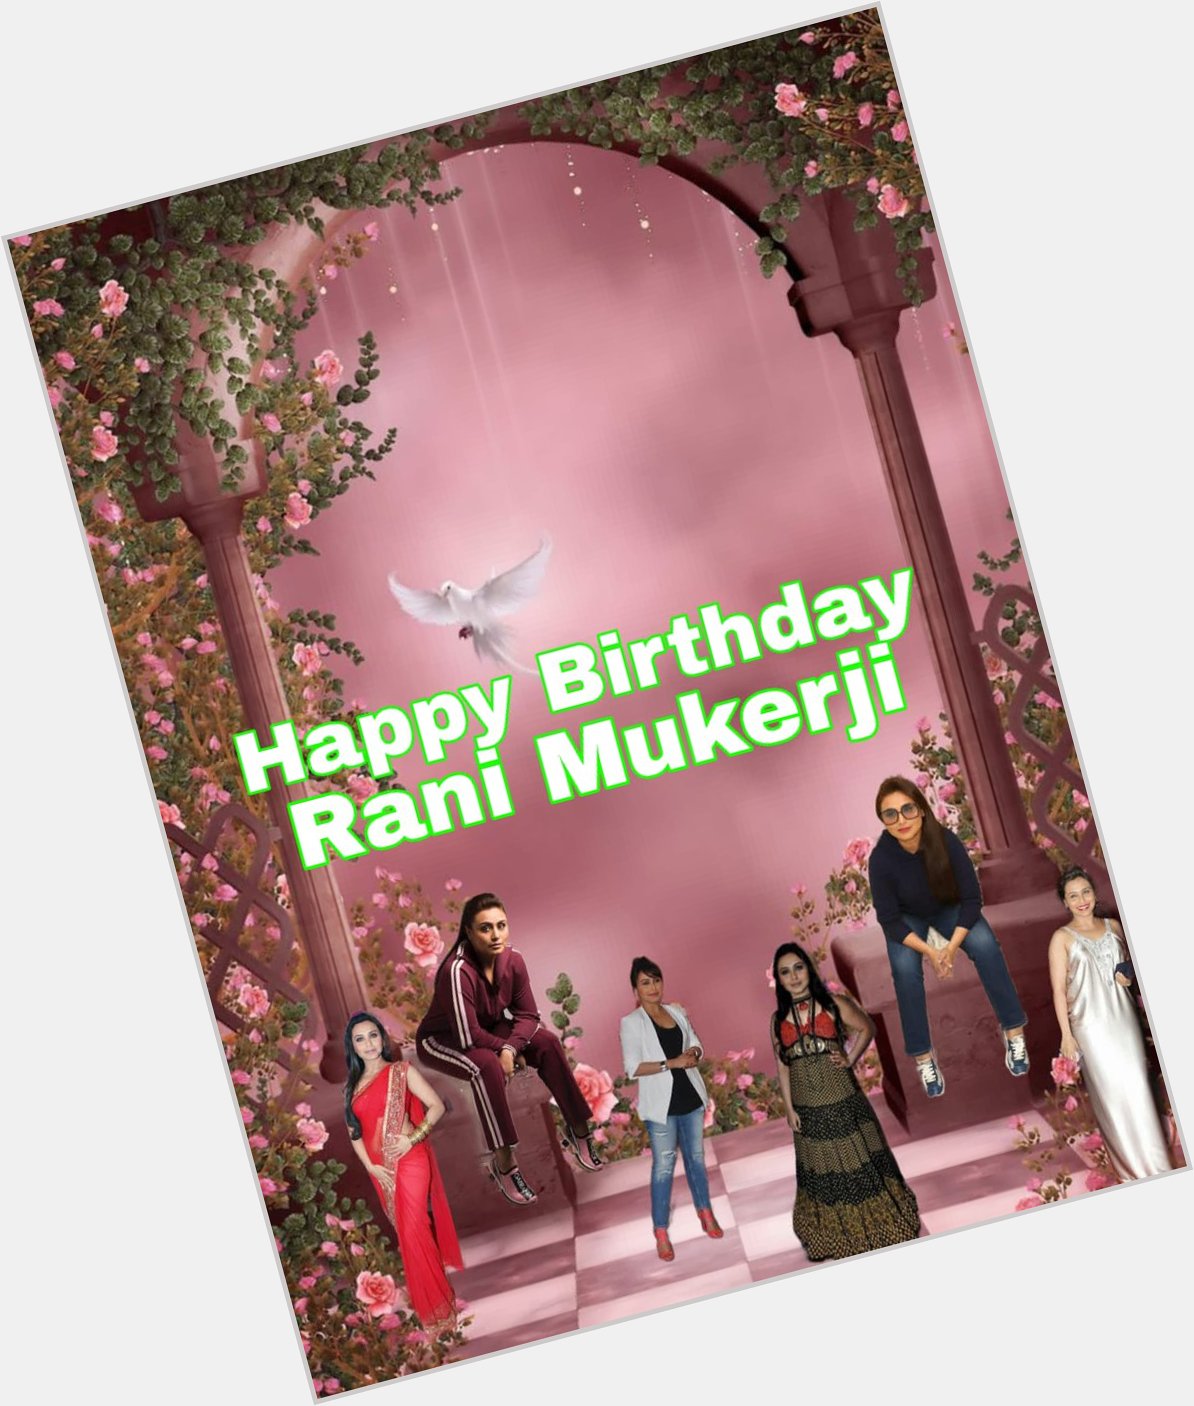 Happy Birthday
Rani mukerji    